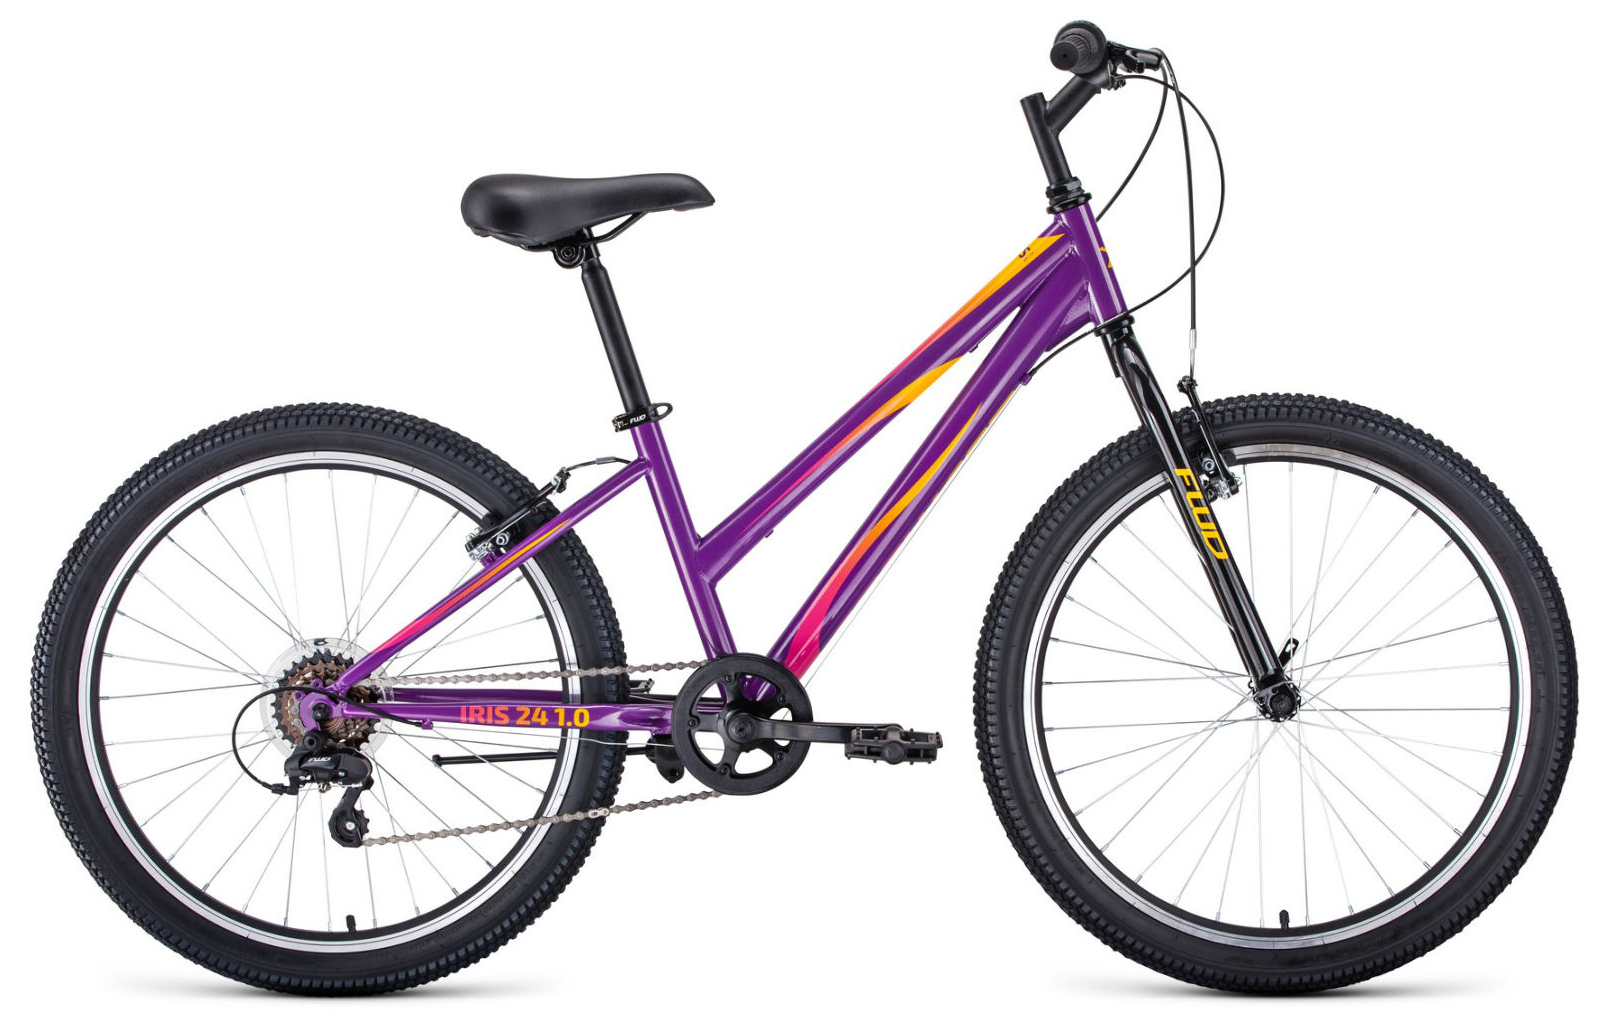  Отзывы о Подростковом велосипеде Forward Iris 24 1.0 2022